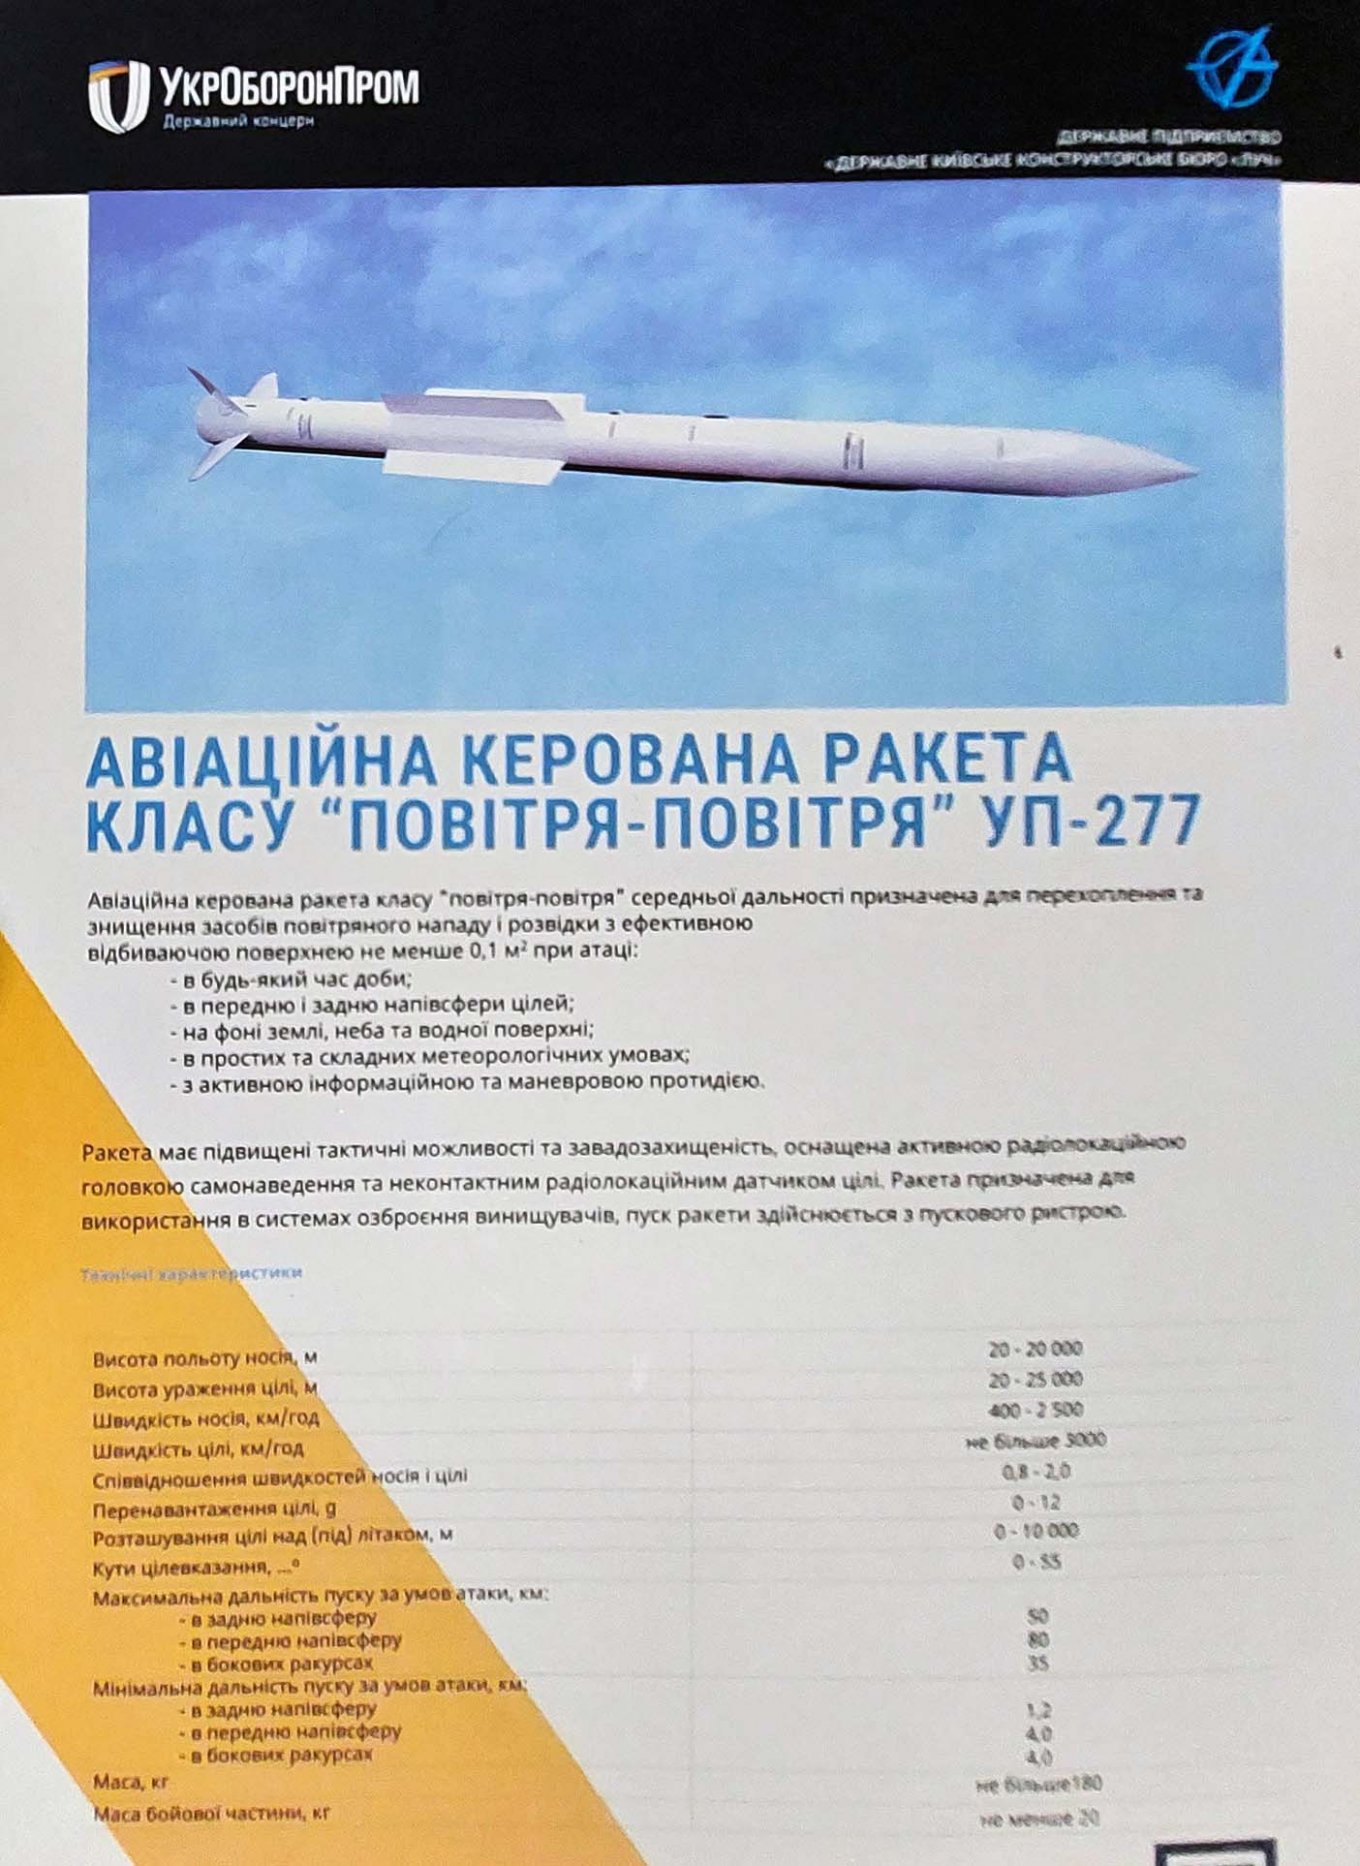 ТТХ ракети середньої дальності УП-277